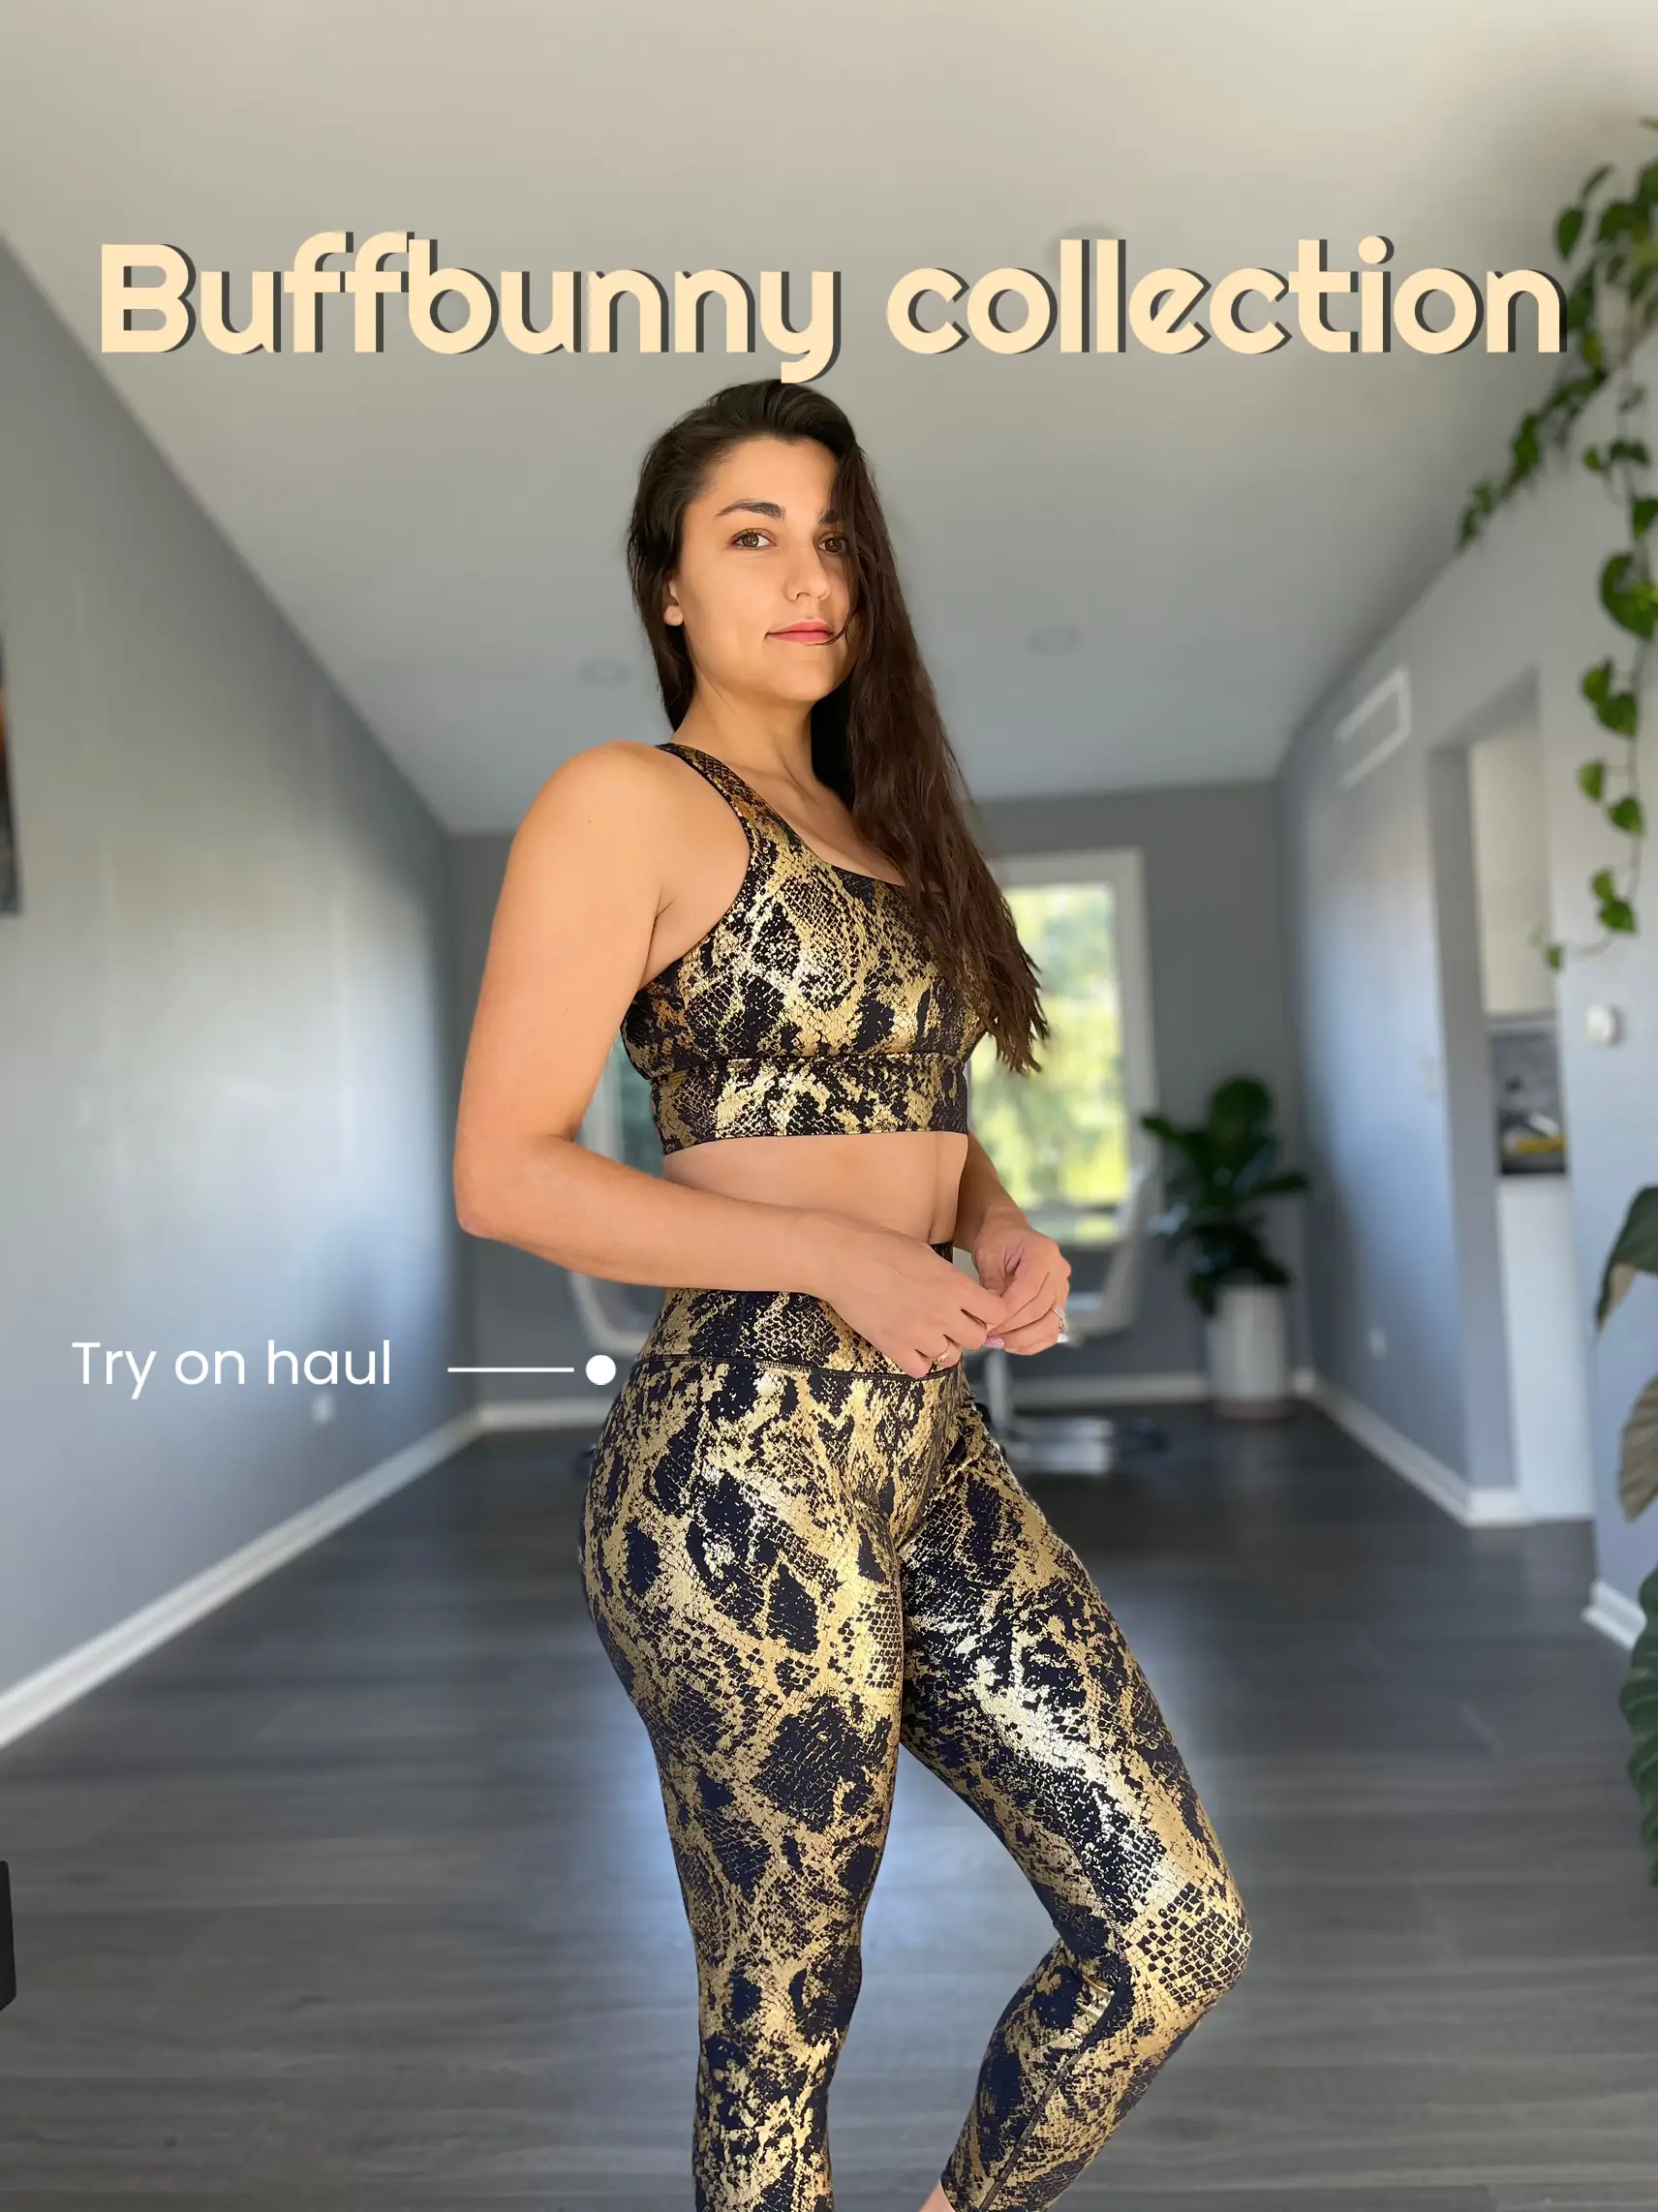 Buffbunny Collection SEVEN